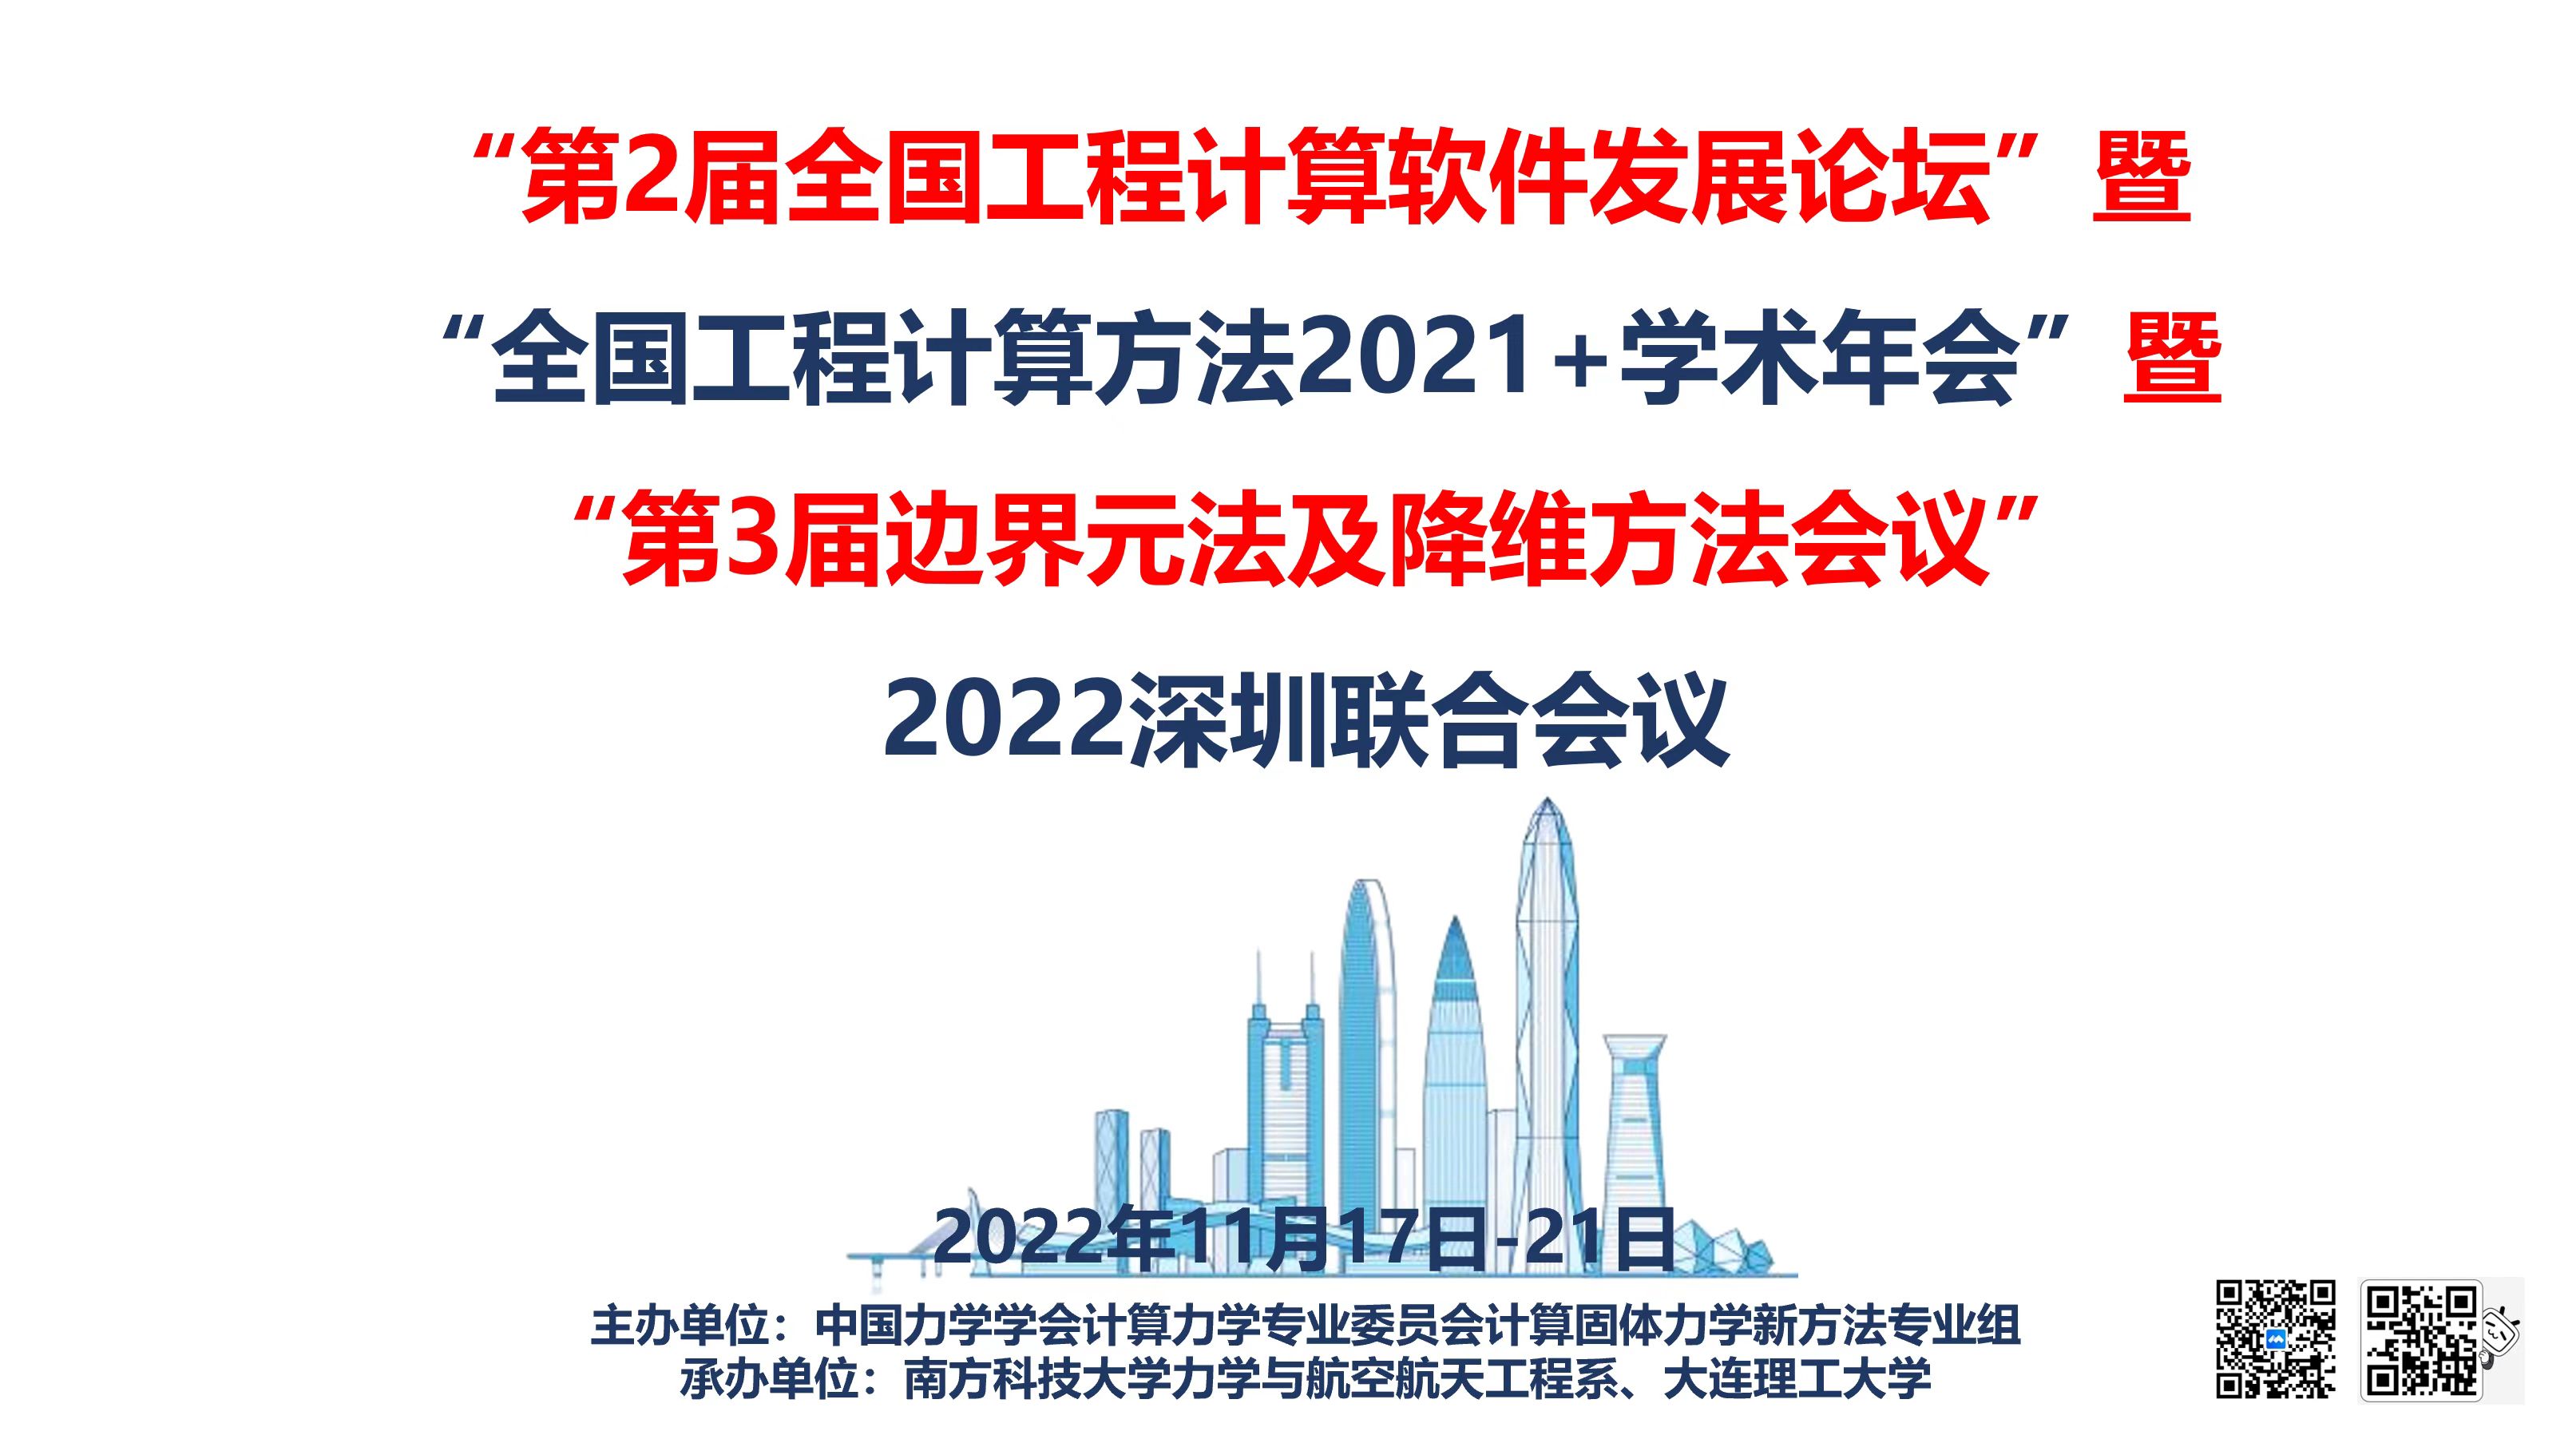 南科大力学与航空航天工程系成功承办2022工程计算深圳联合会议